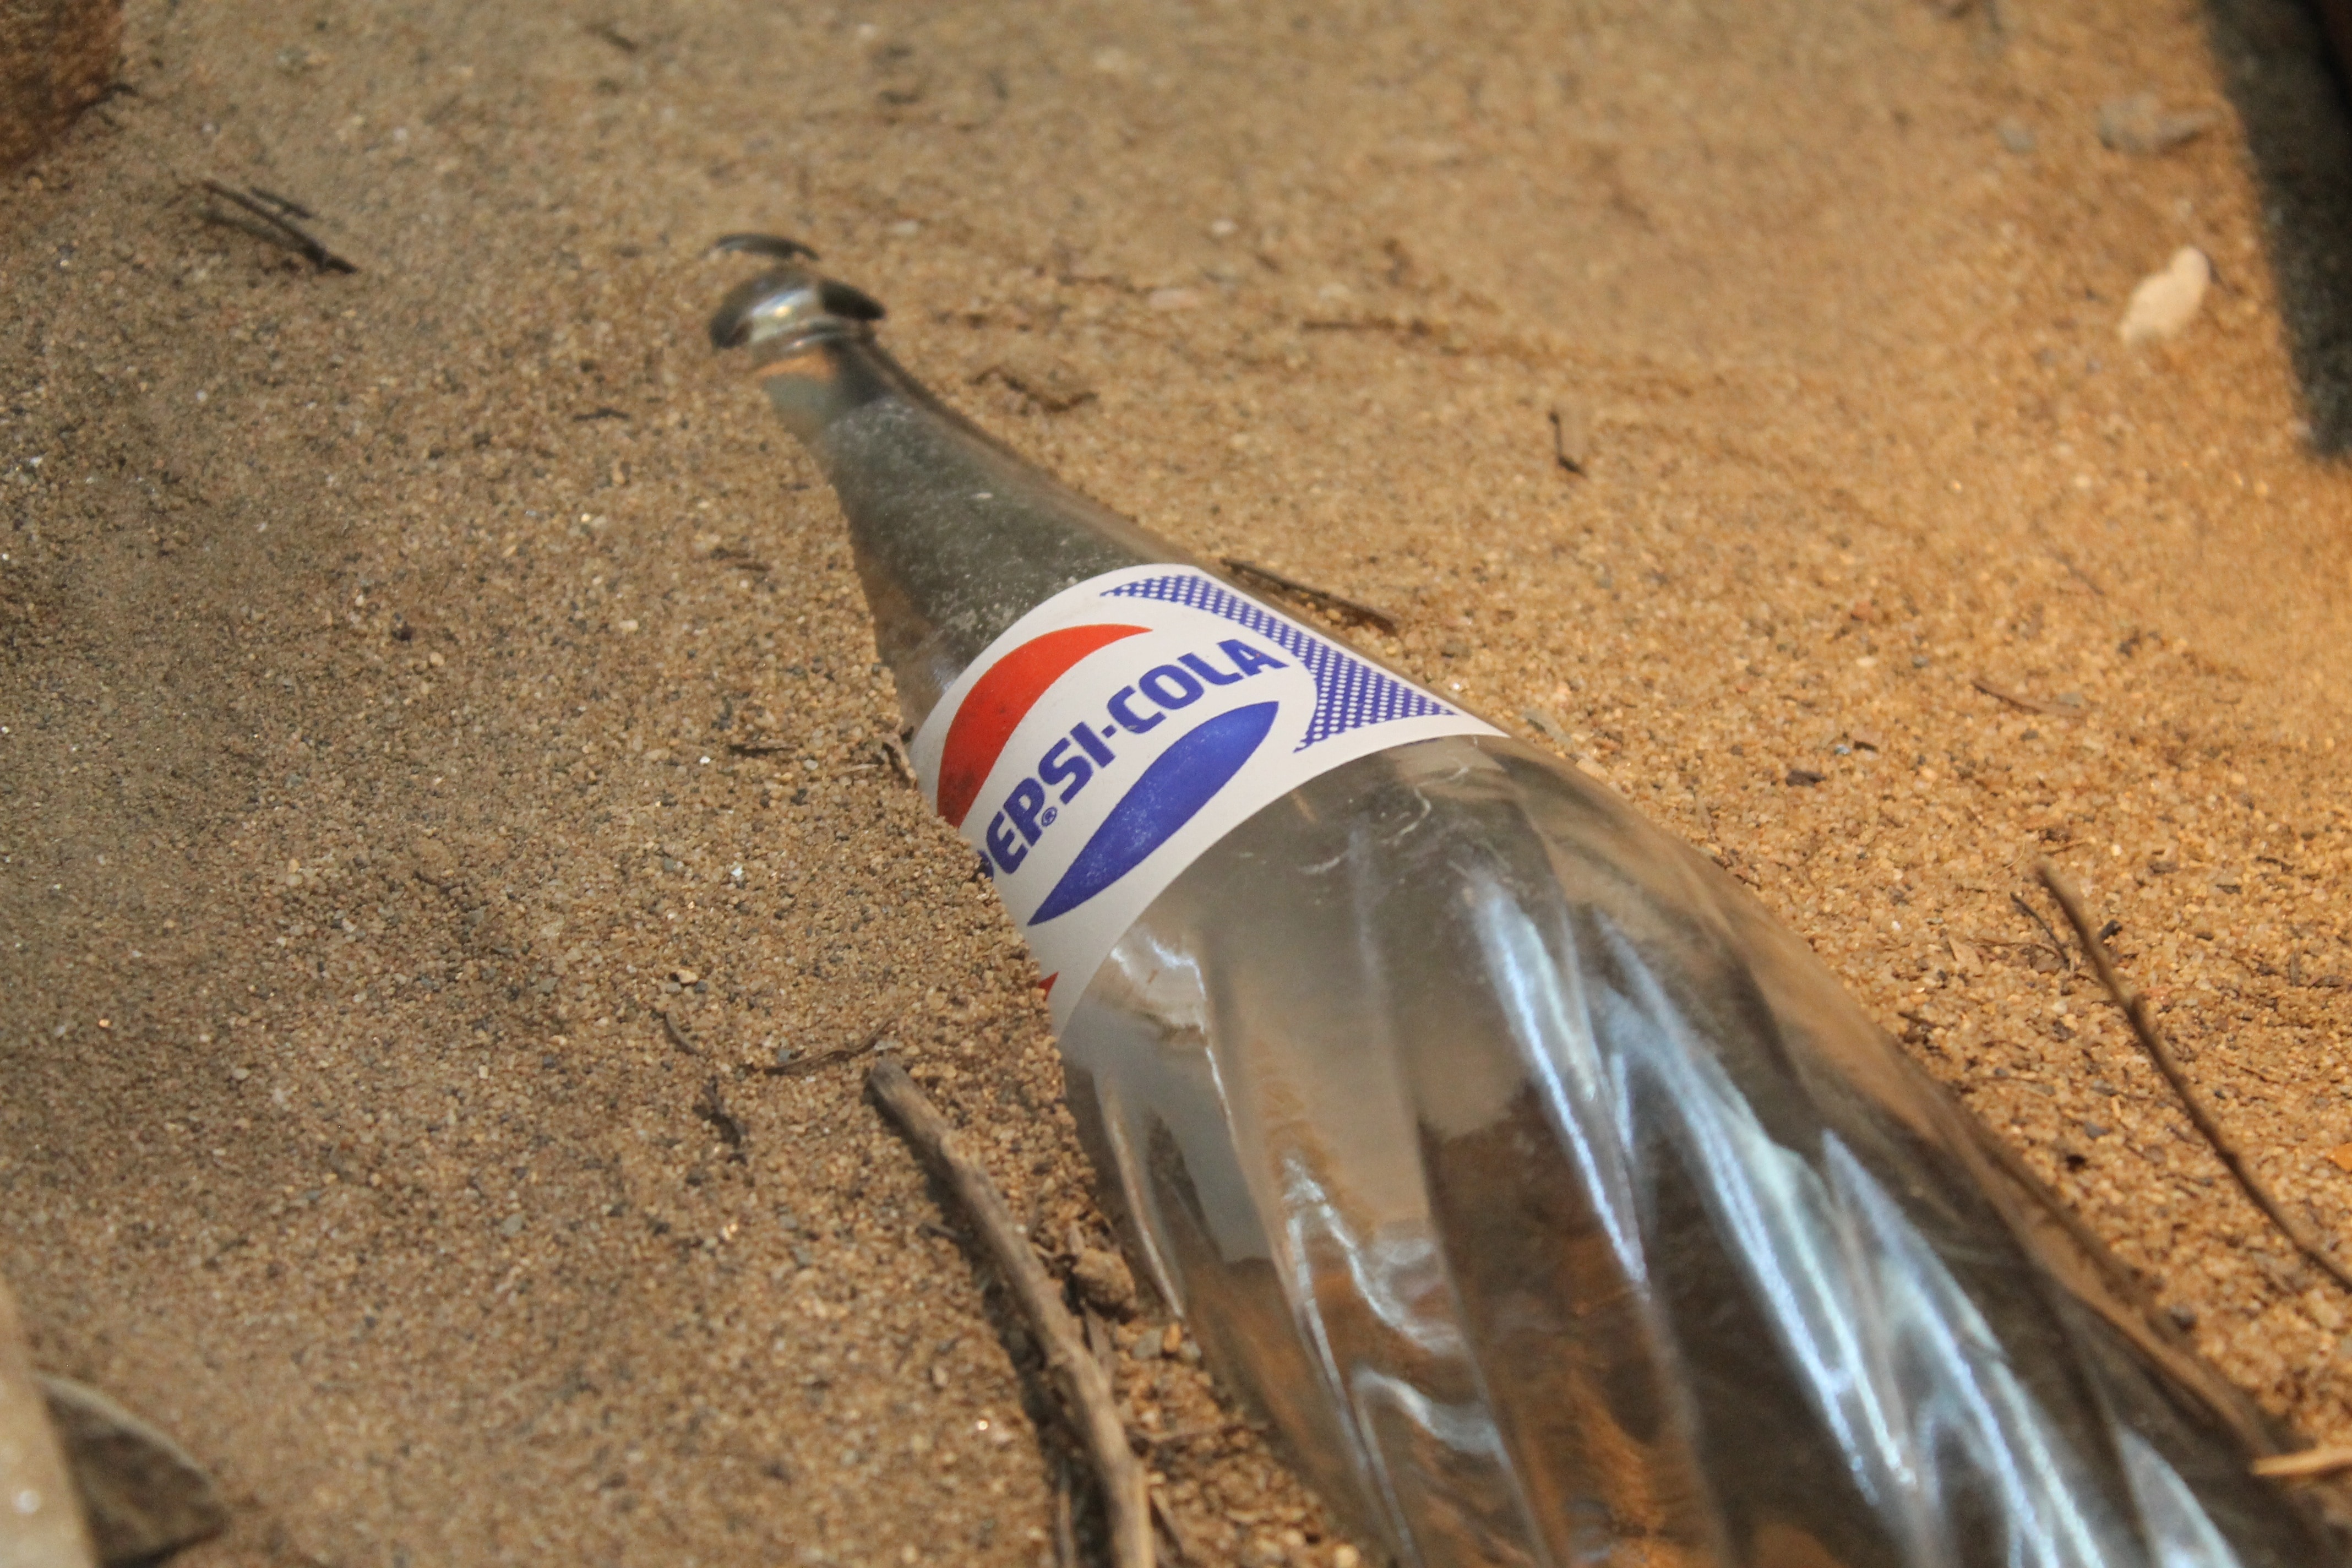 Pepsi-Cola bottle on sand